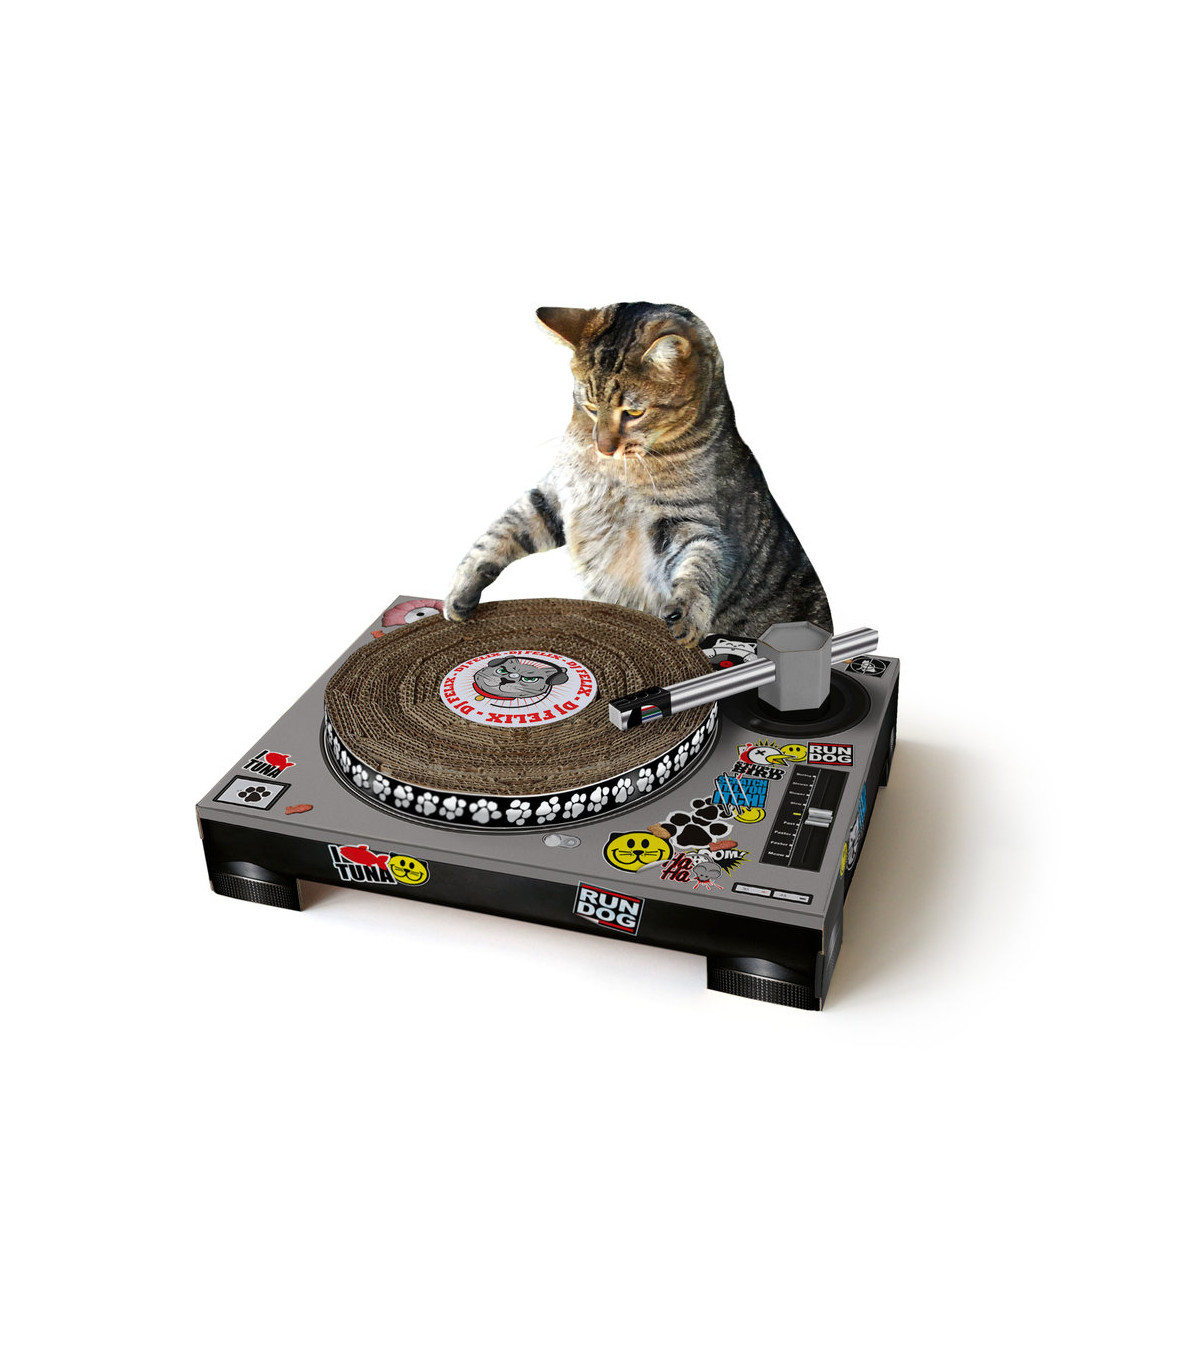 Ce soir aux platines, c'est DJ chat qui vous fait la musique